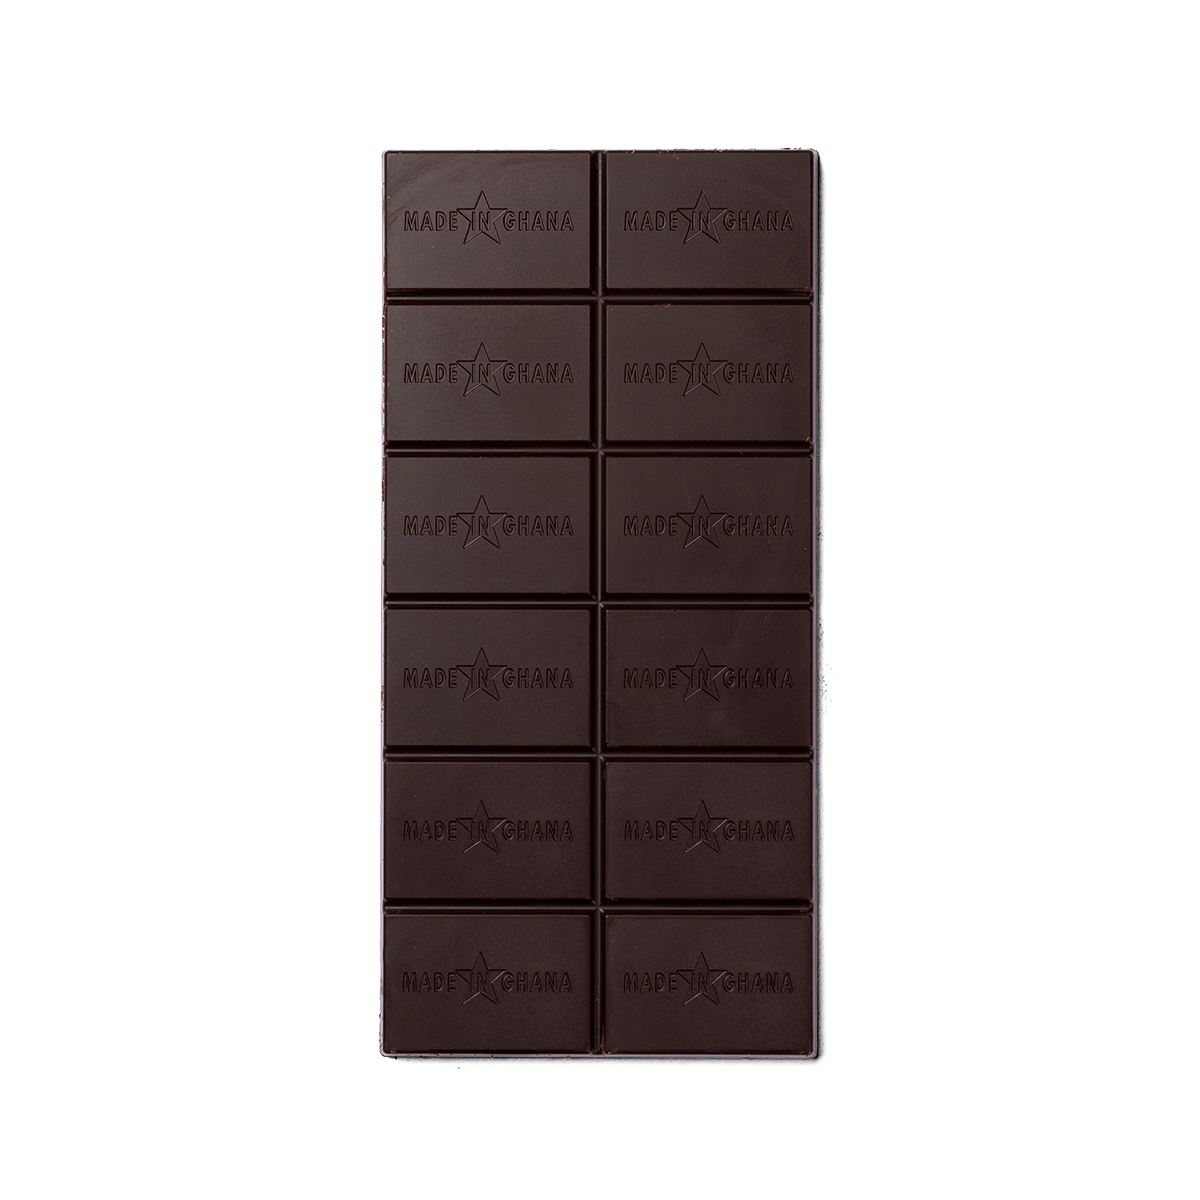 70% organic dark chocolate